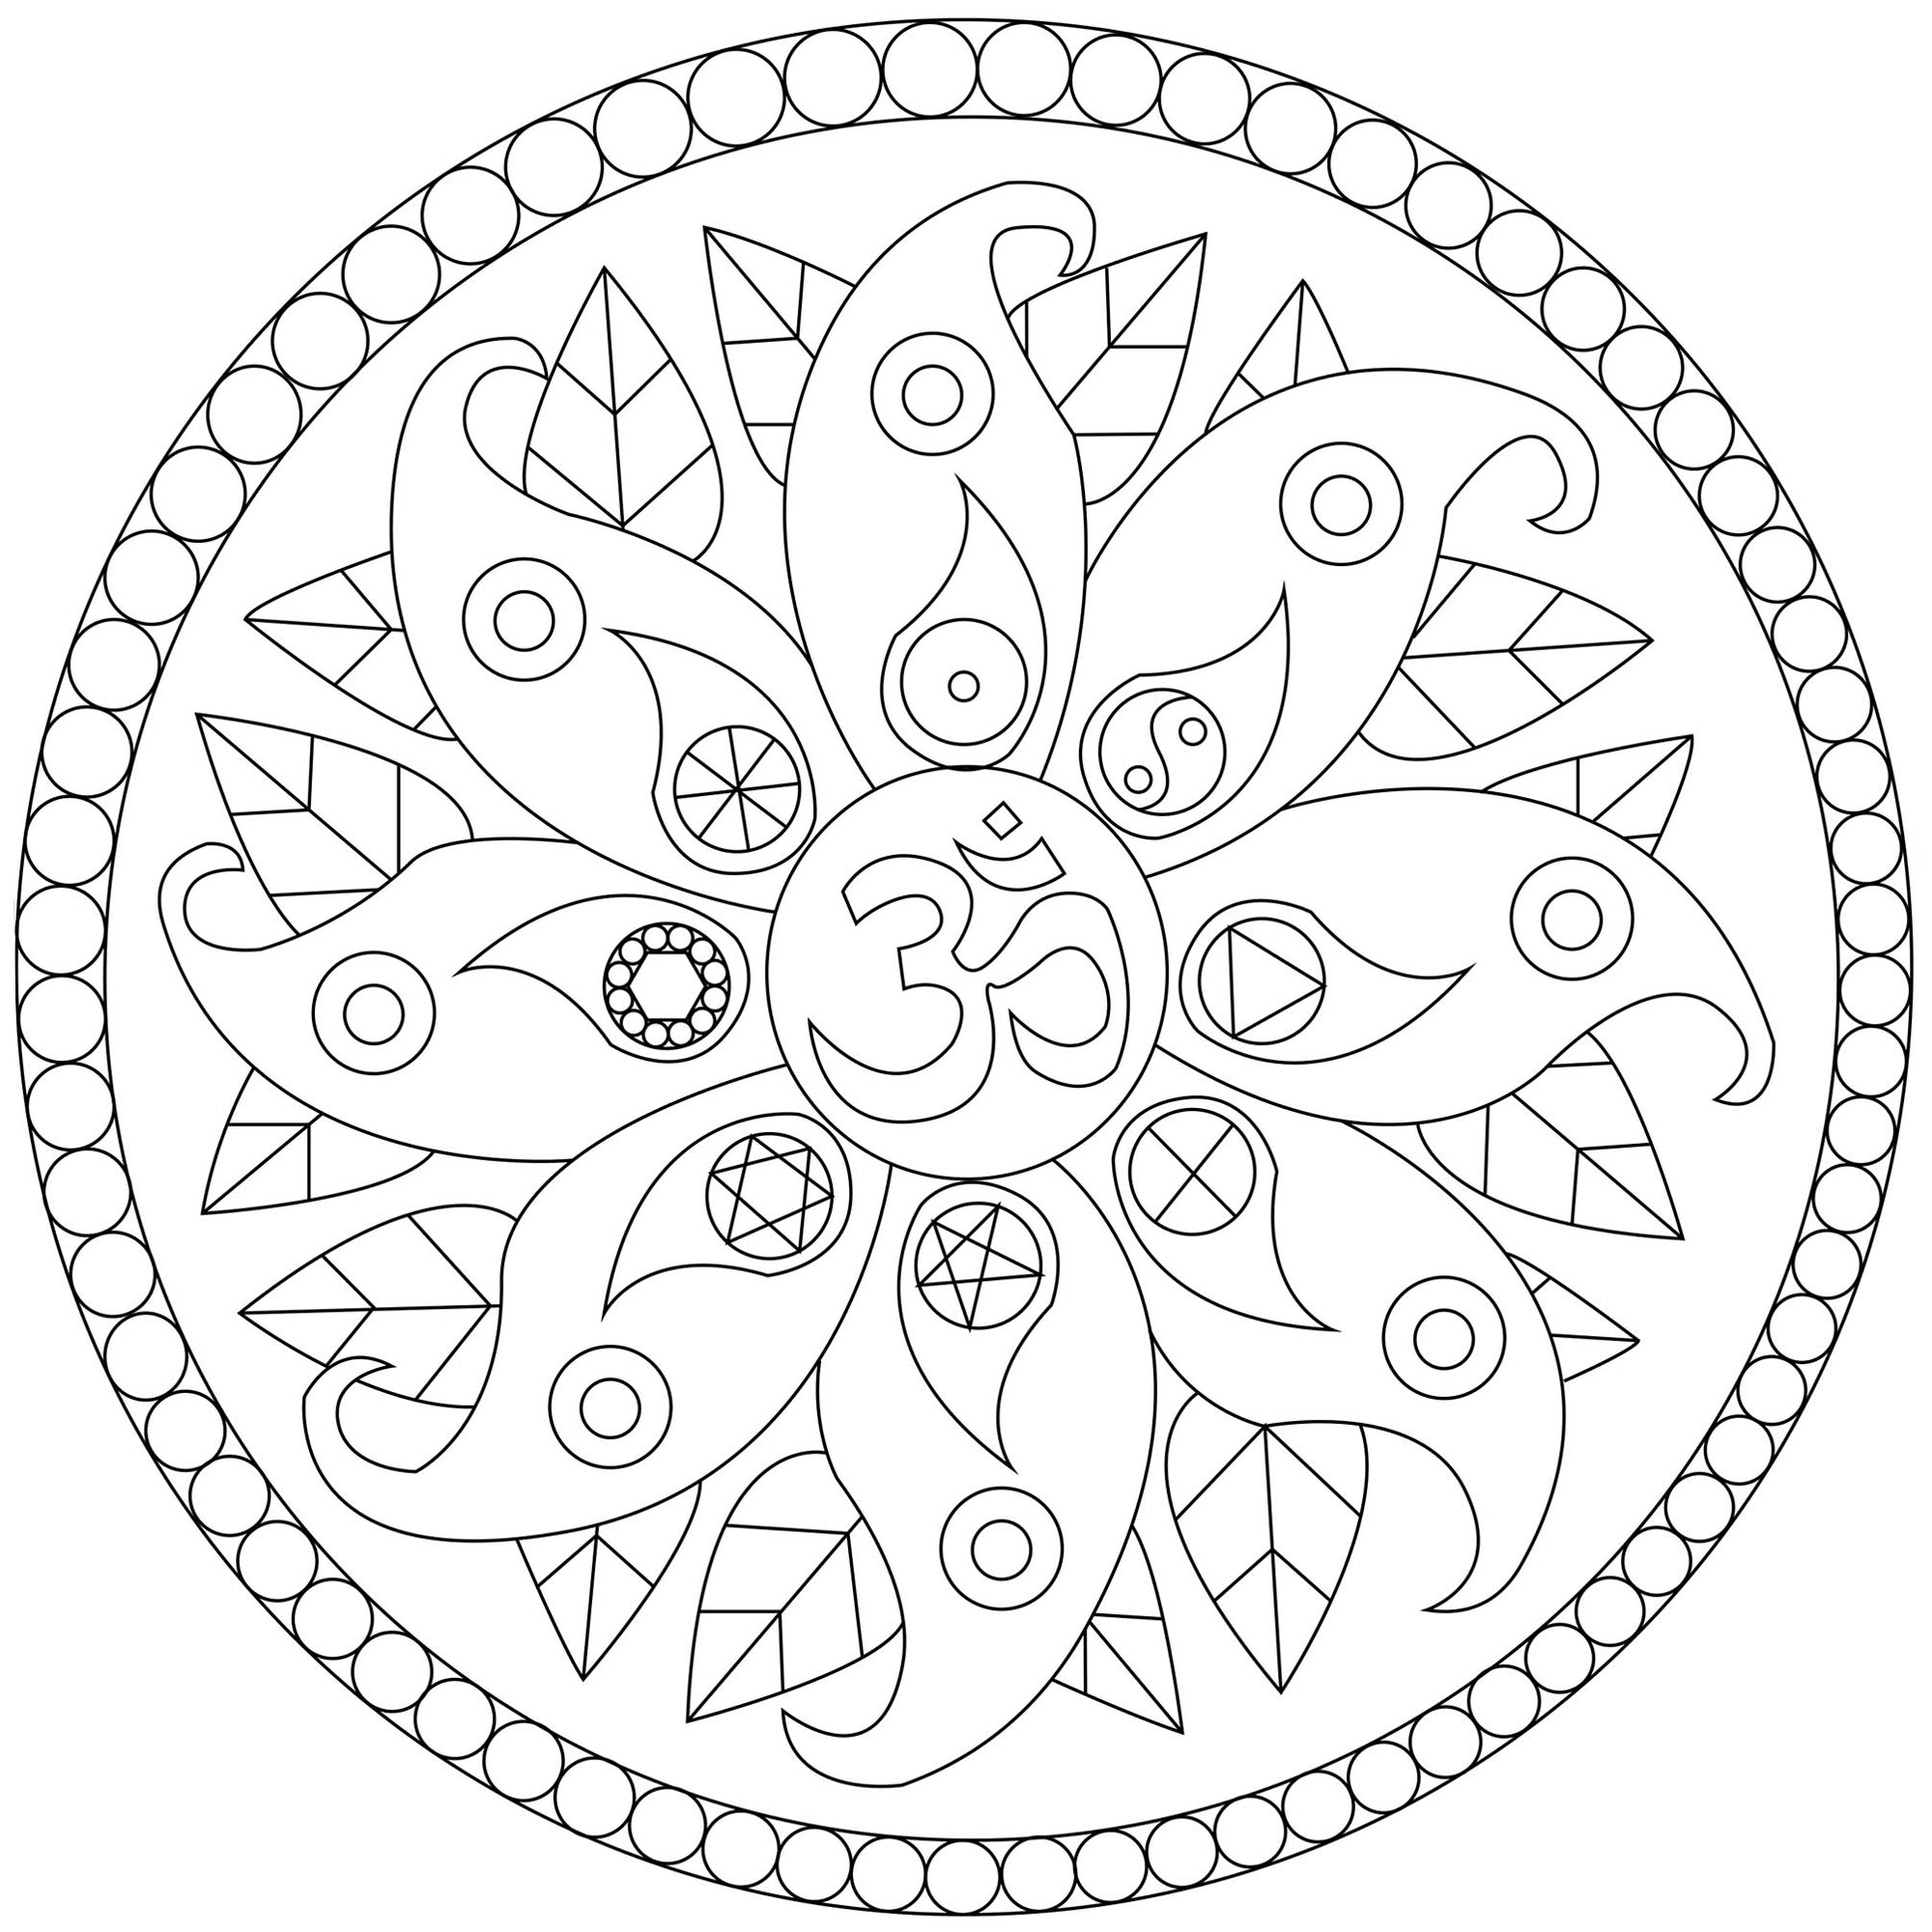 Mandala com vários símbolos : Om, Yin e Yang ... Um desenho para colorir cheio de paz, Artista : Caillou